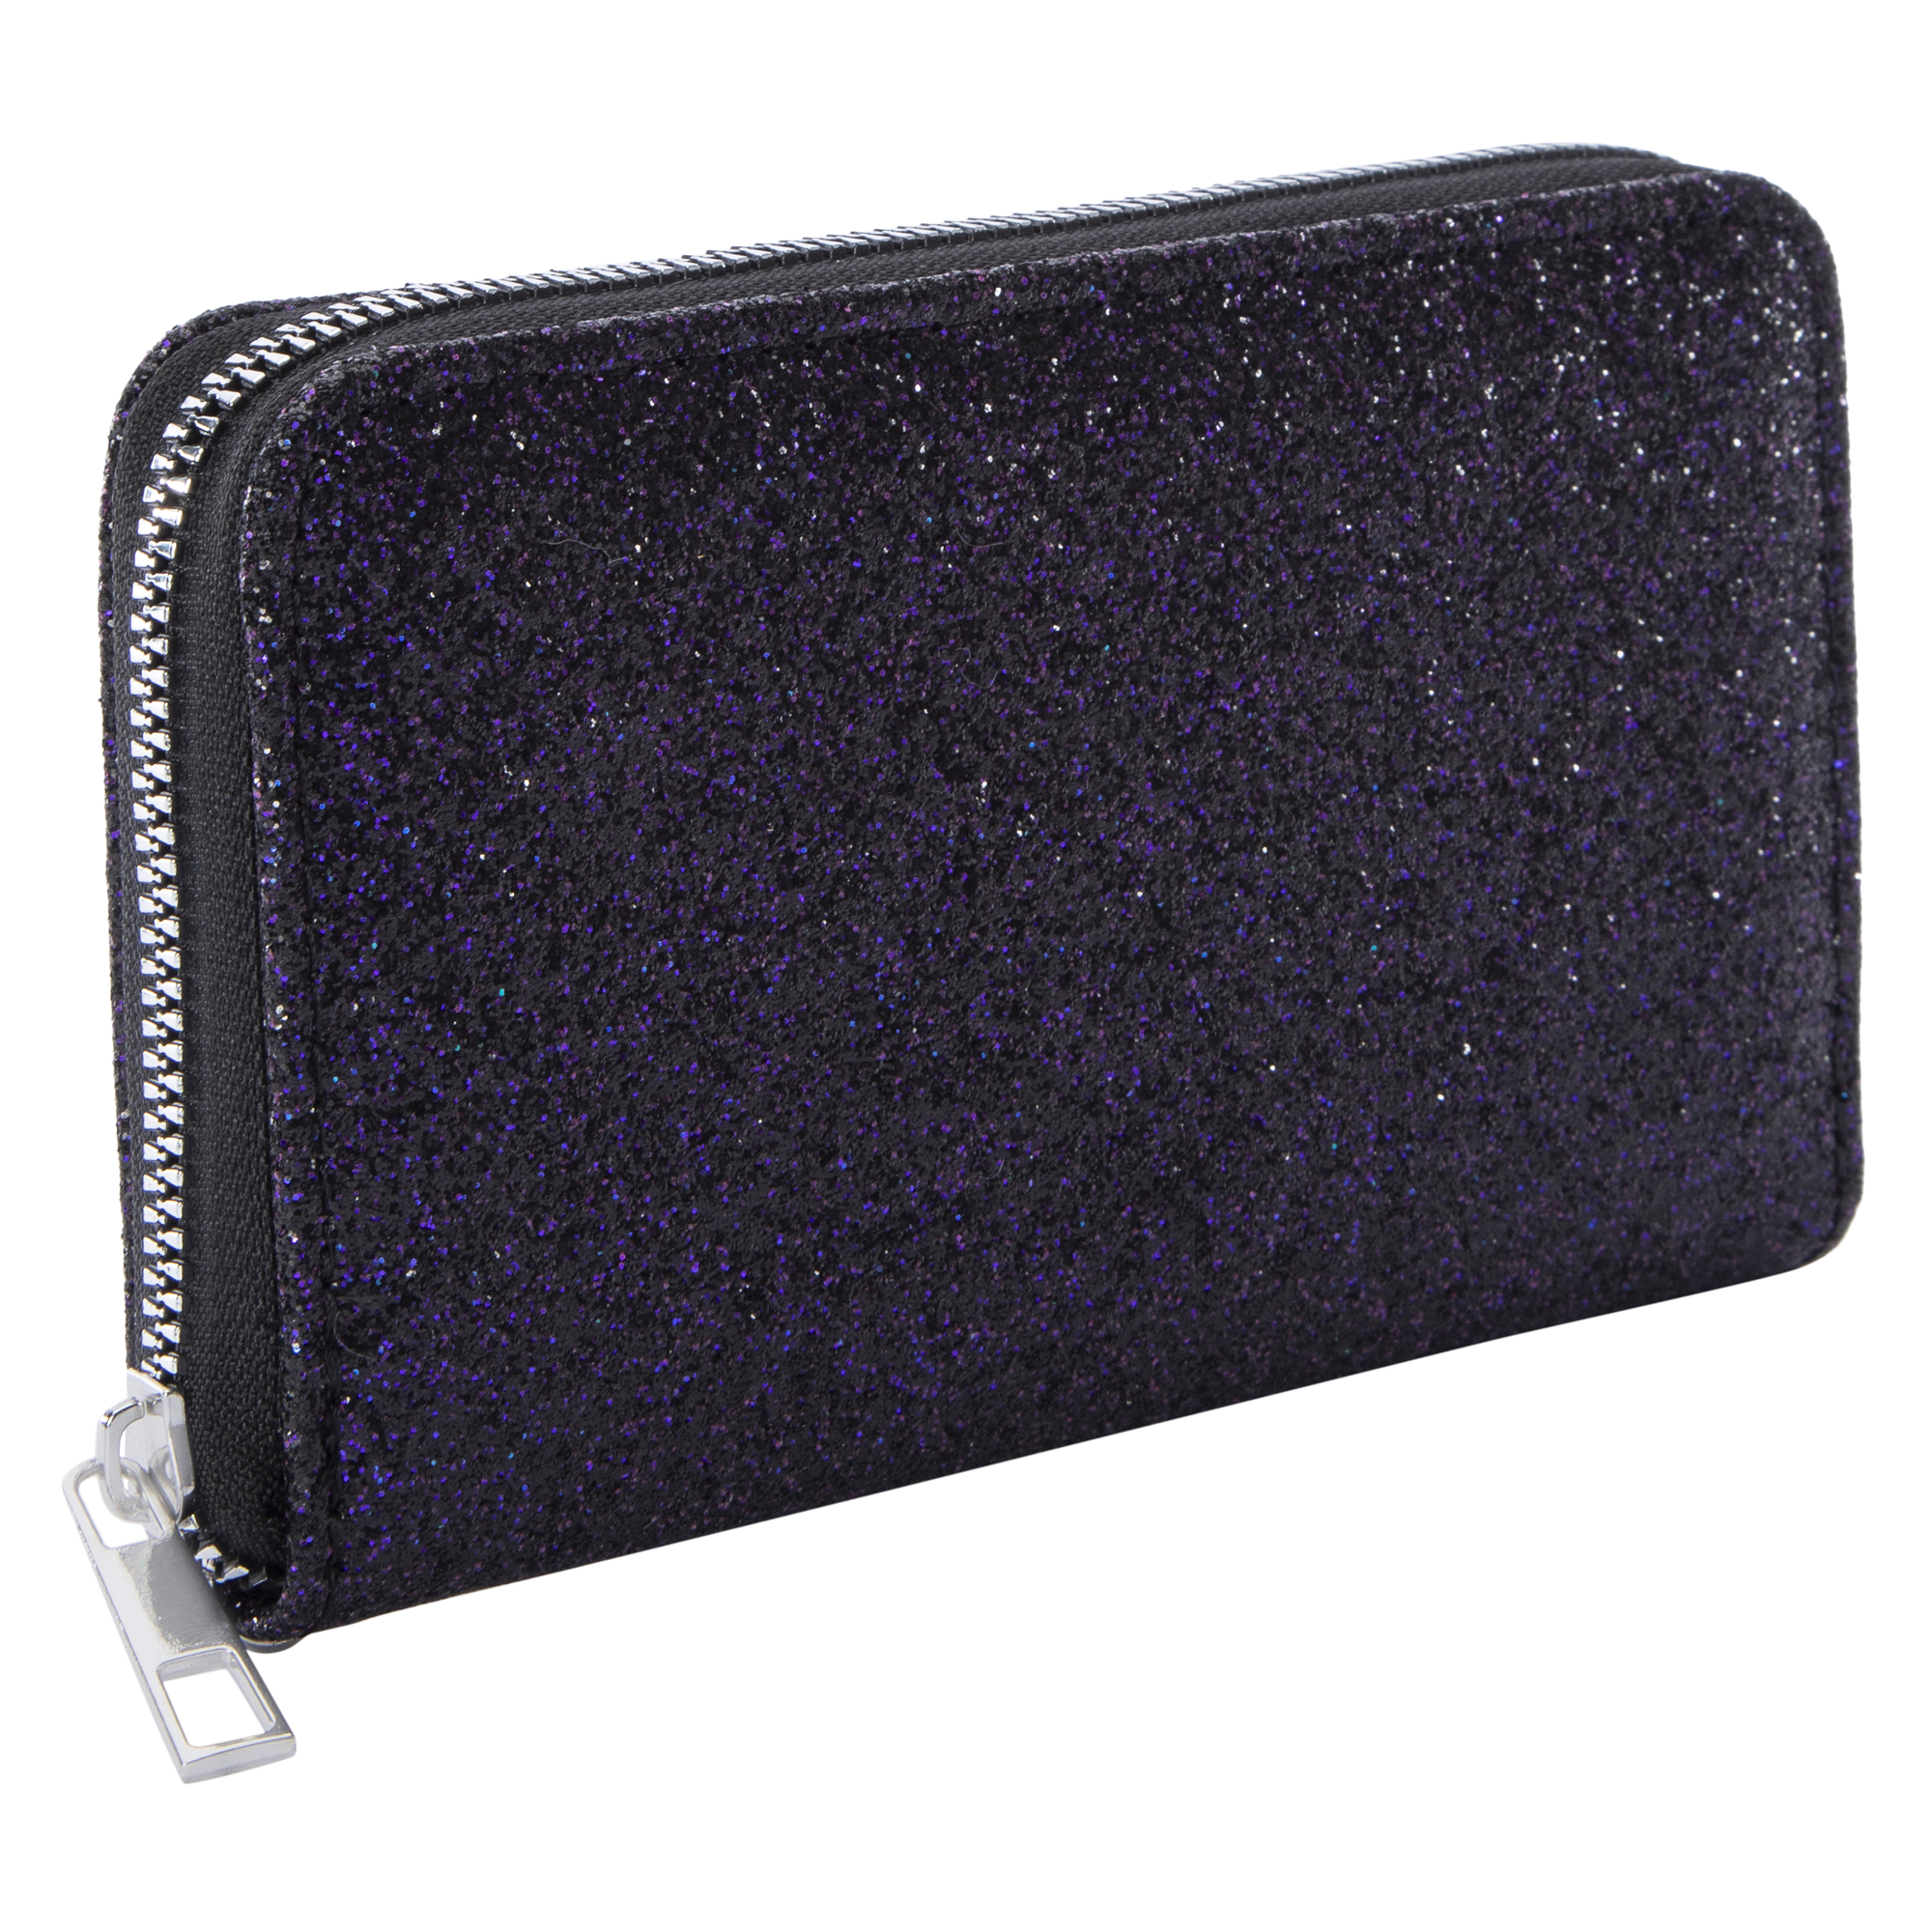 zipper wallet 6.89in